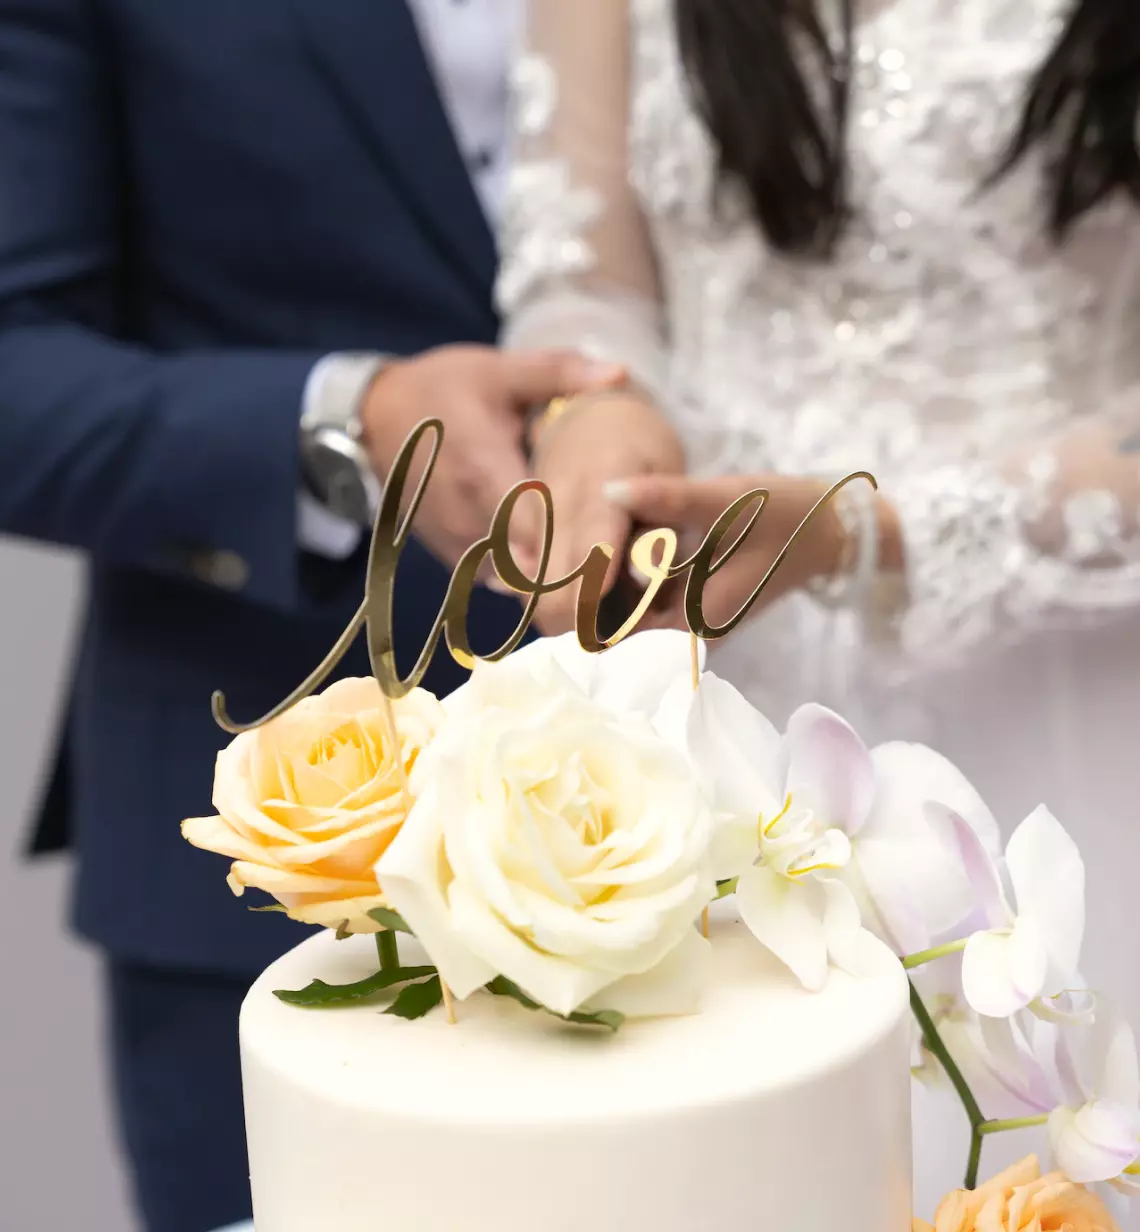 العروسين والكعكة